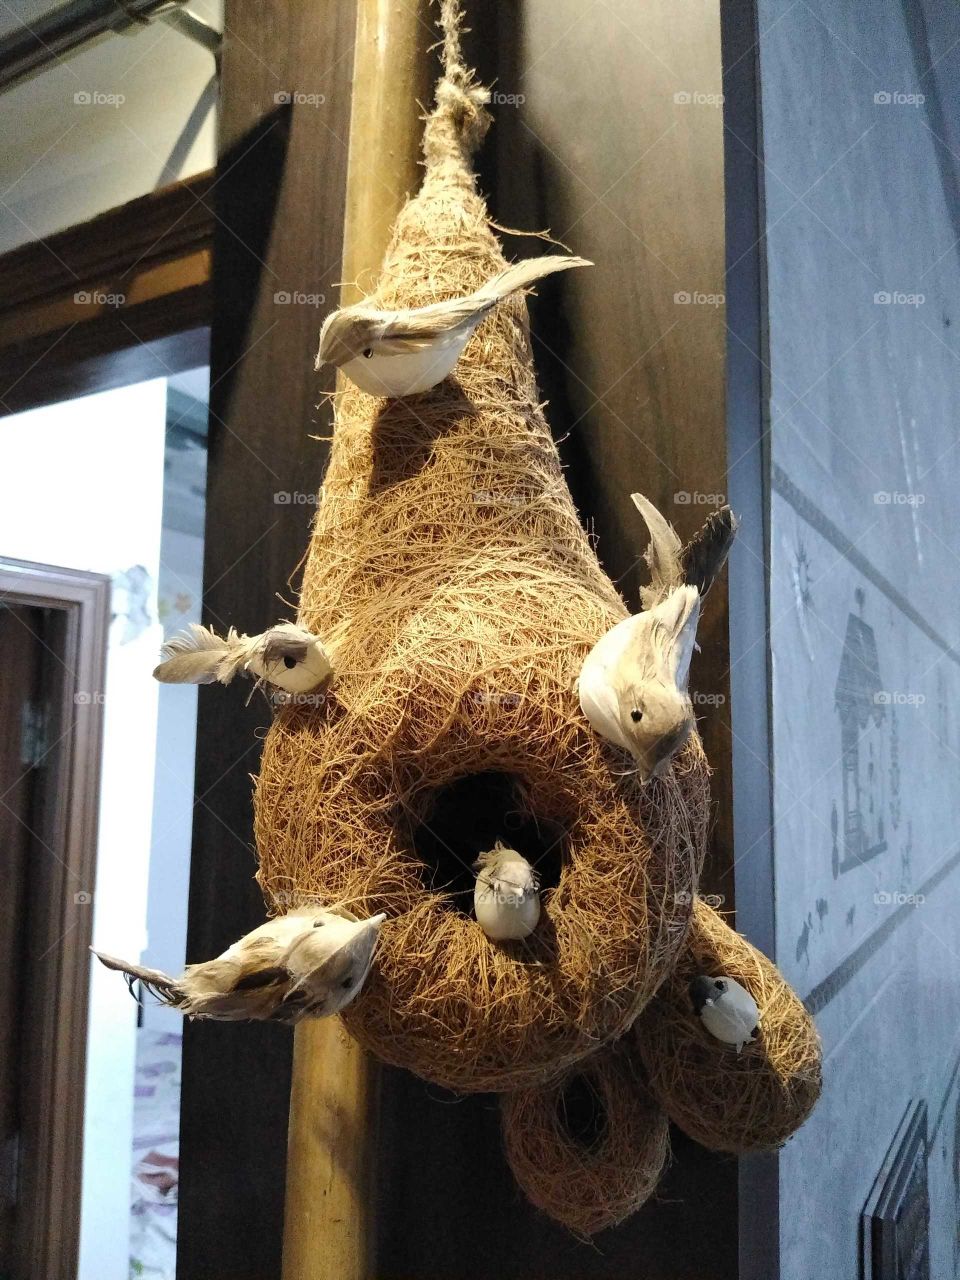 Birds nest artificial